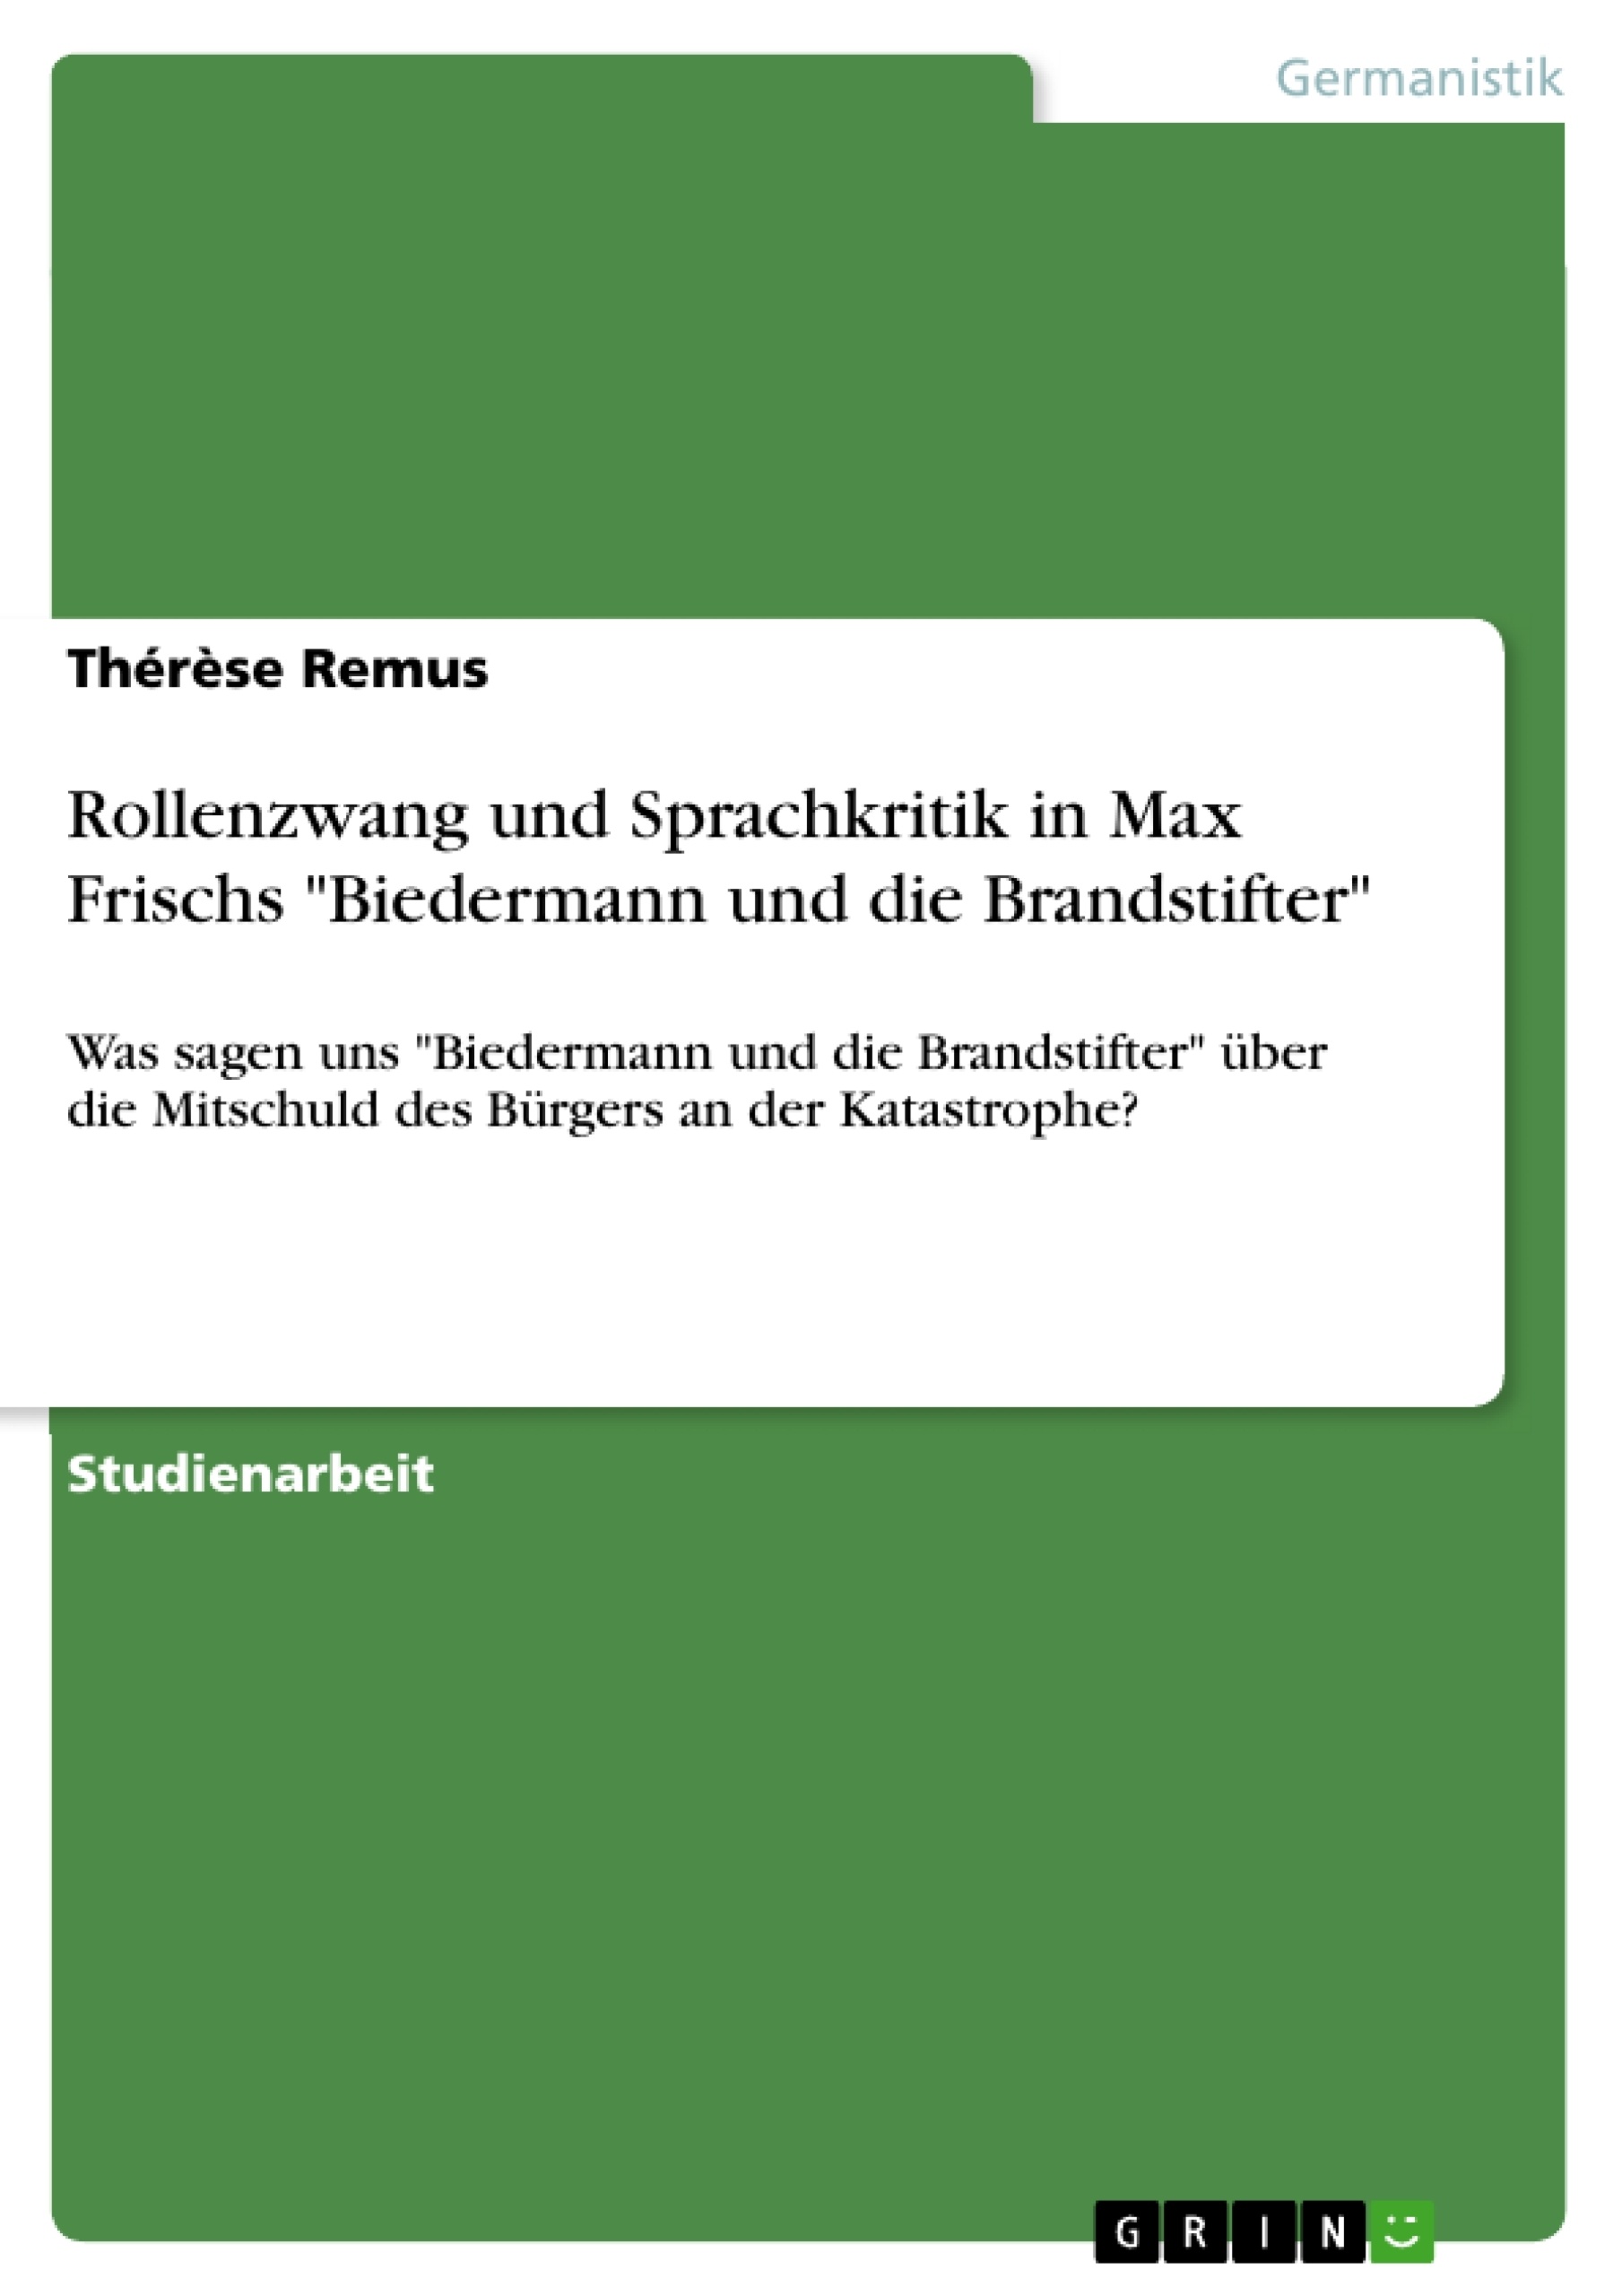 Título: Rollenzwang und Sprachkritik in Max Frischs "Biedermann und die Brandstifter"